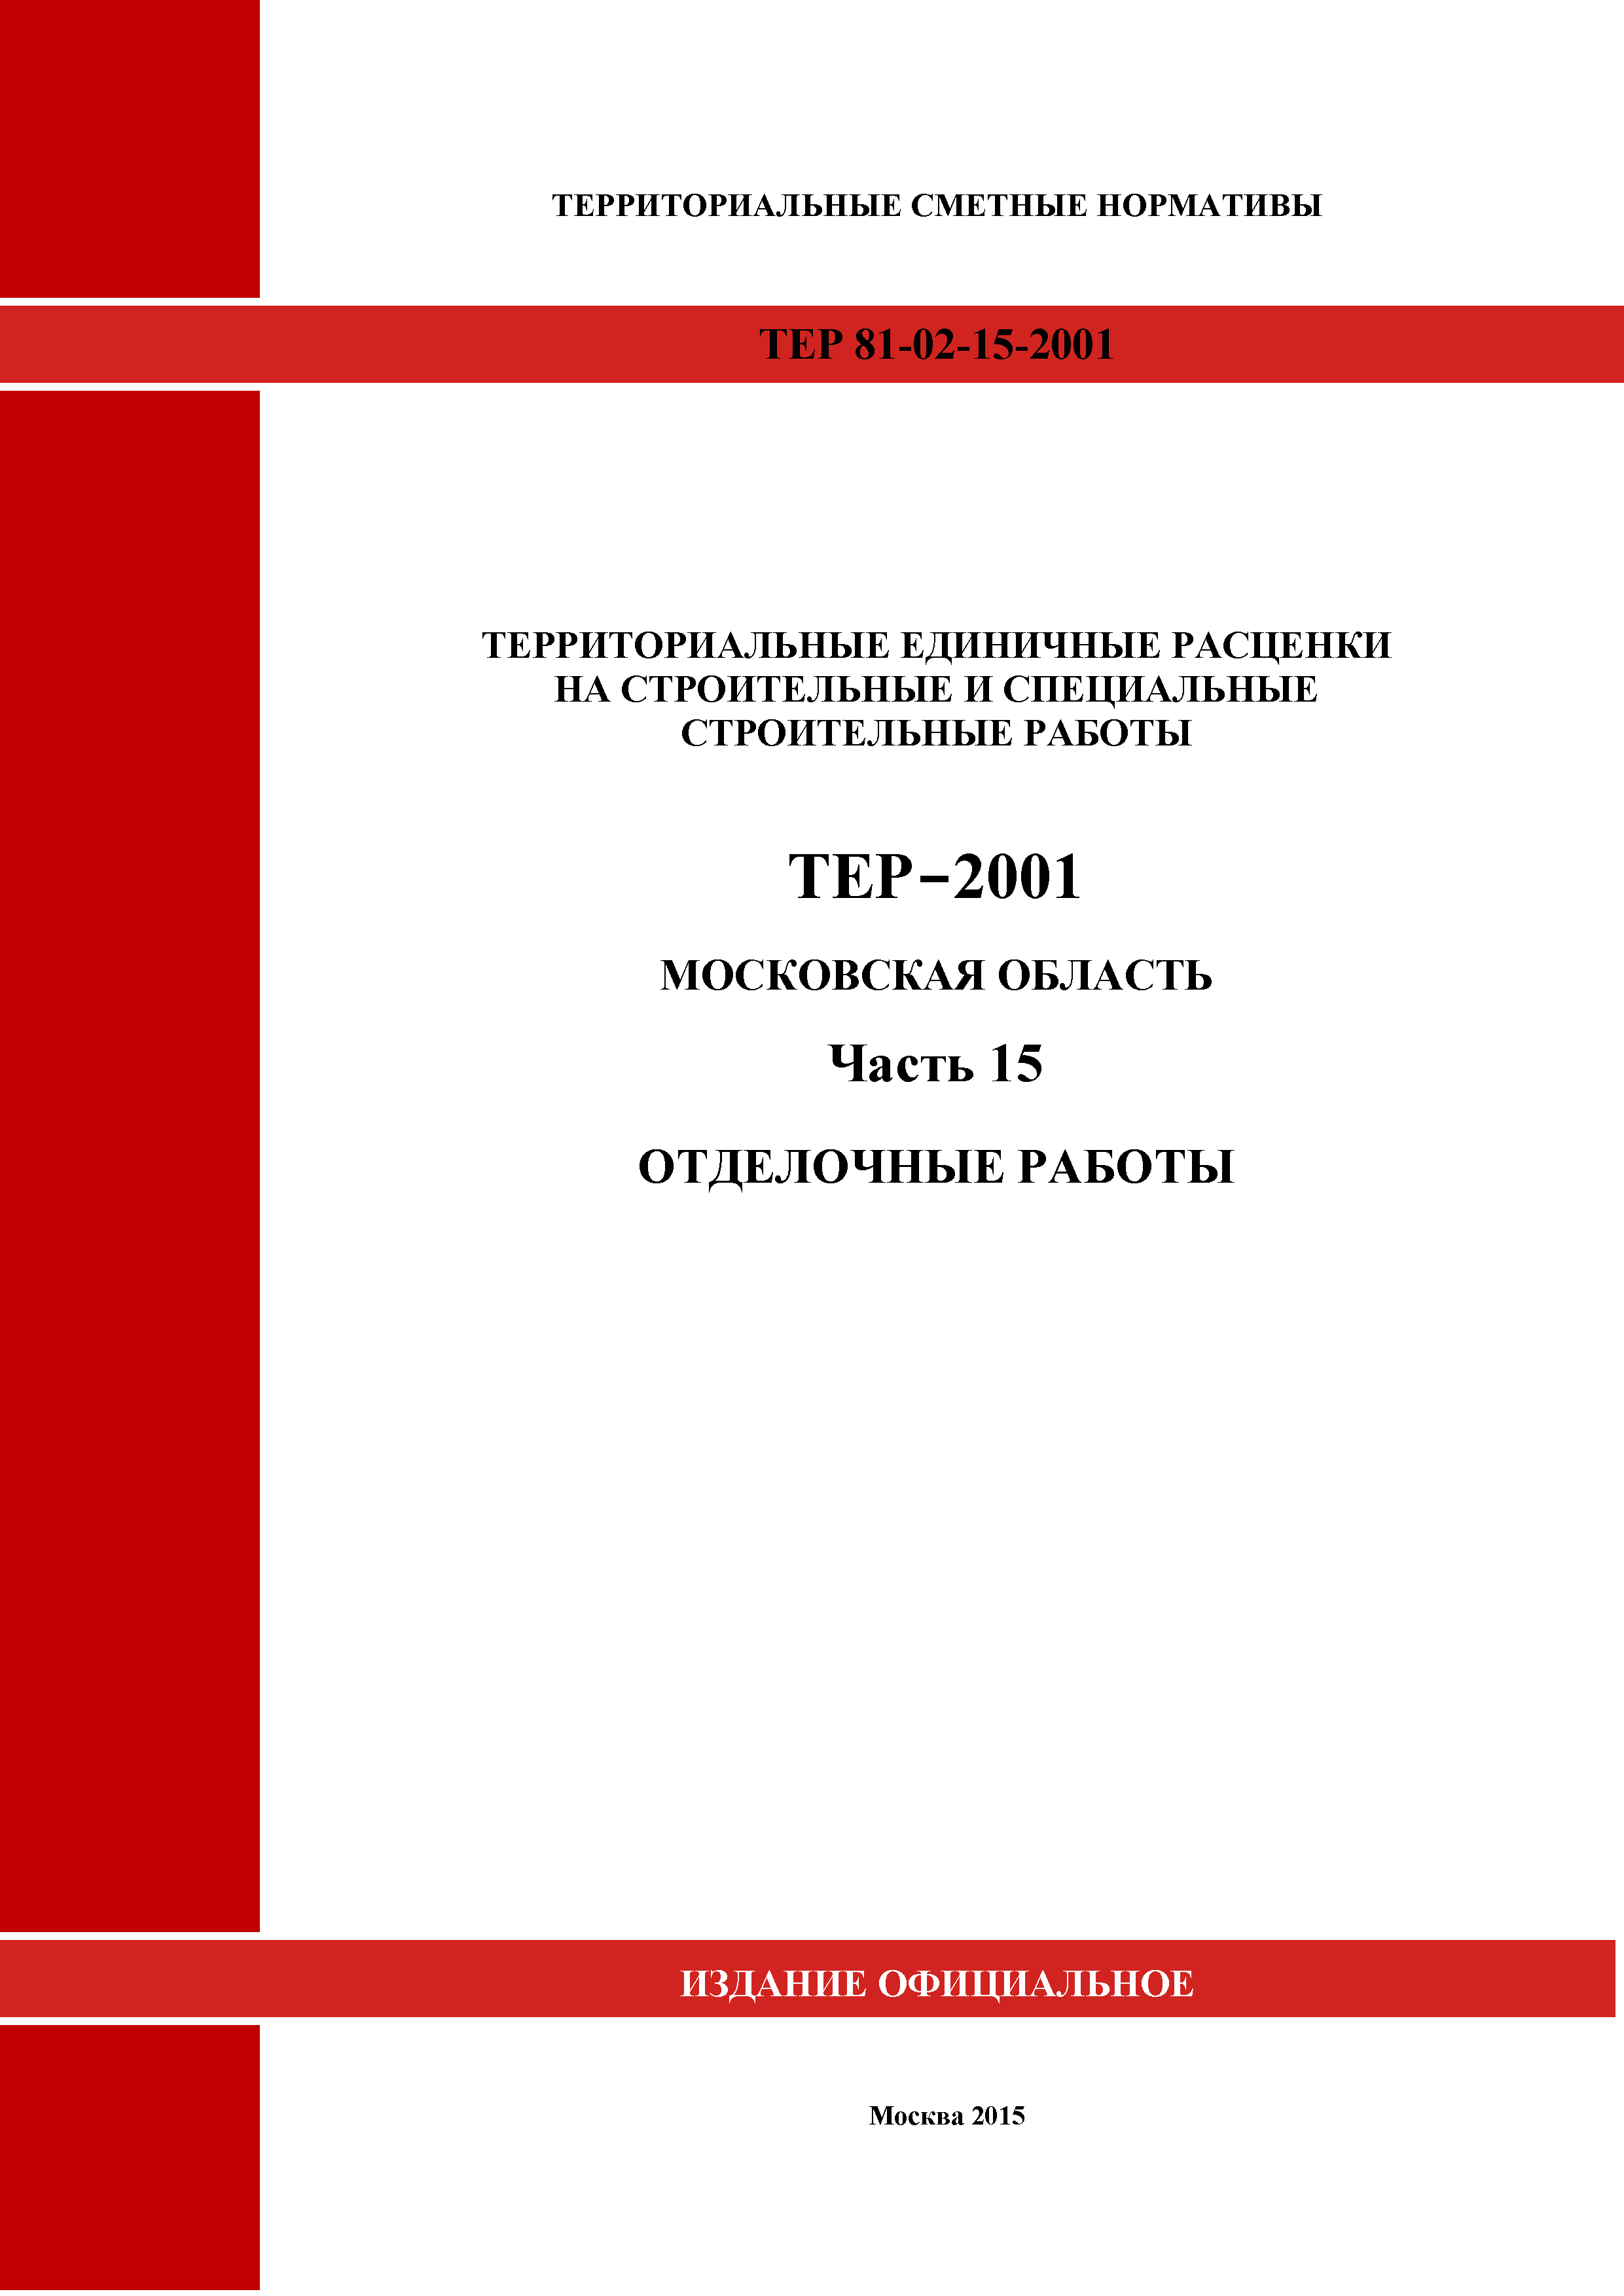 ТЕР 15-2001 Московской области